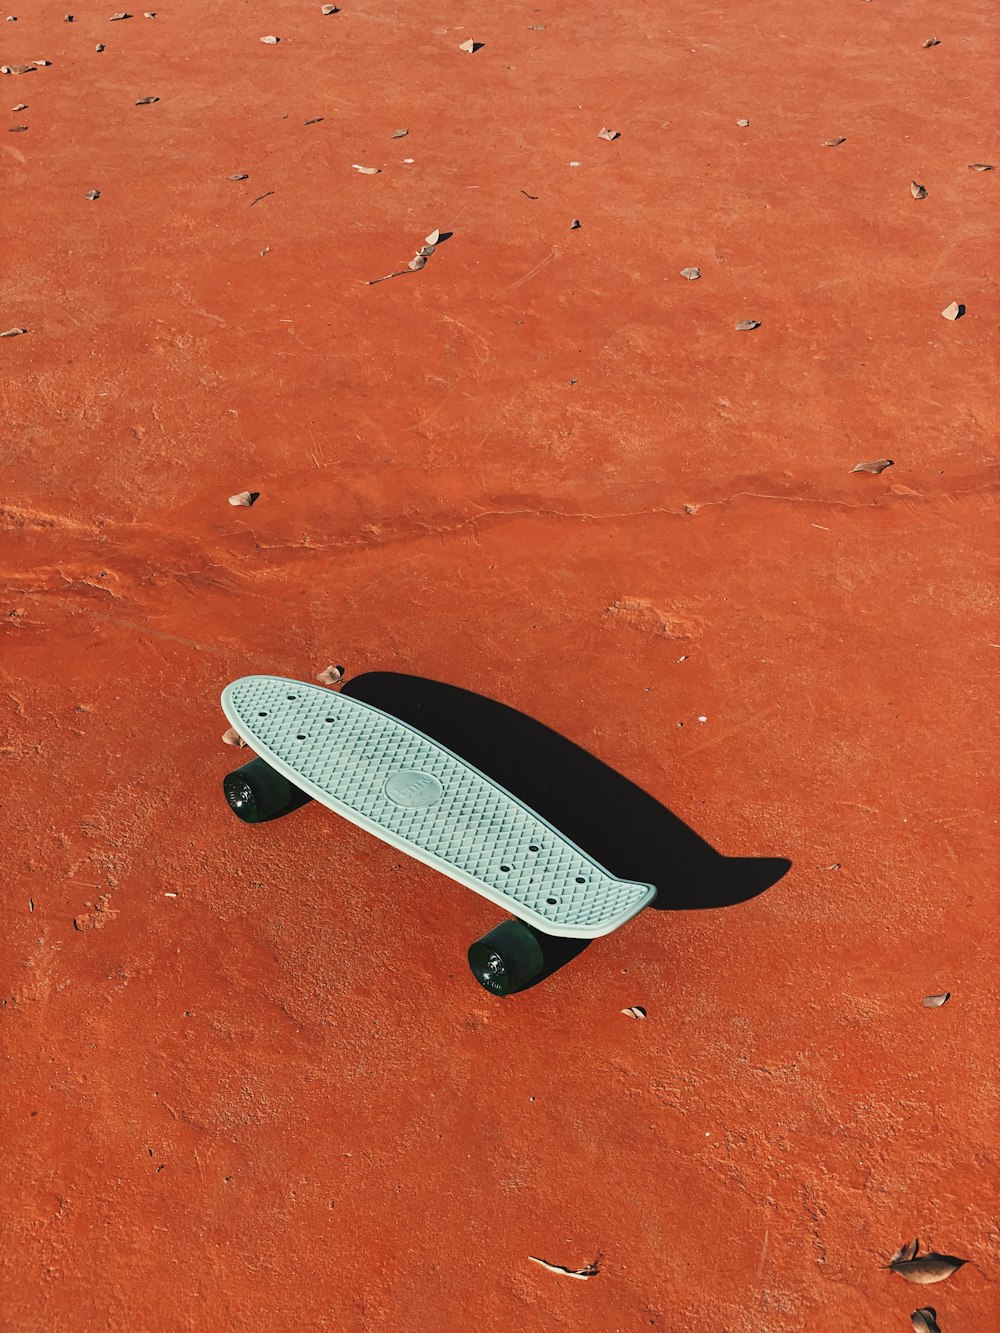 茶色の砂の上に白と黒のスケートボード